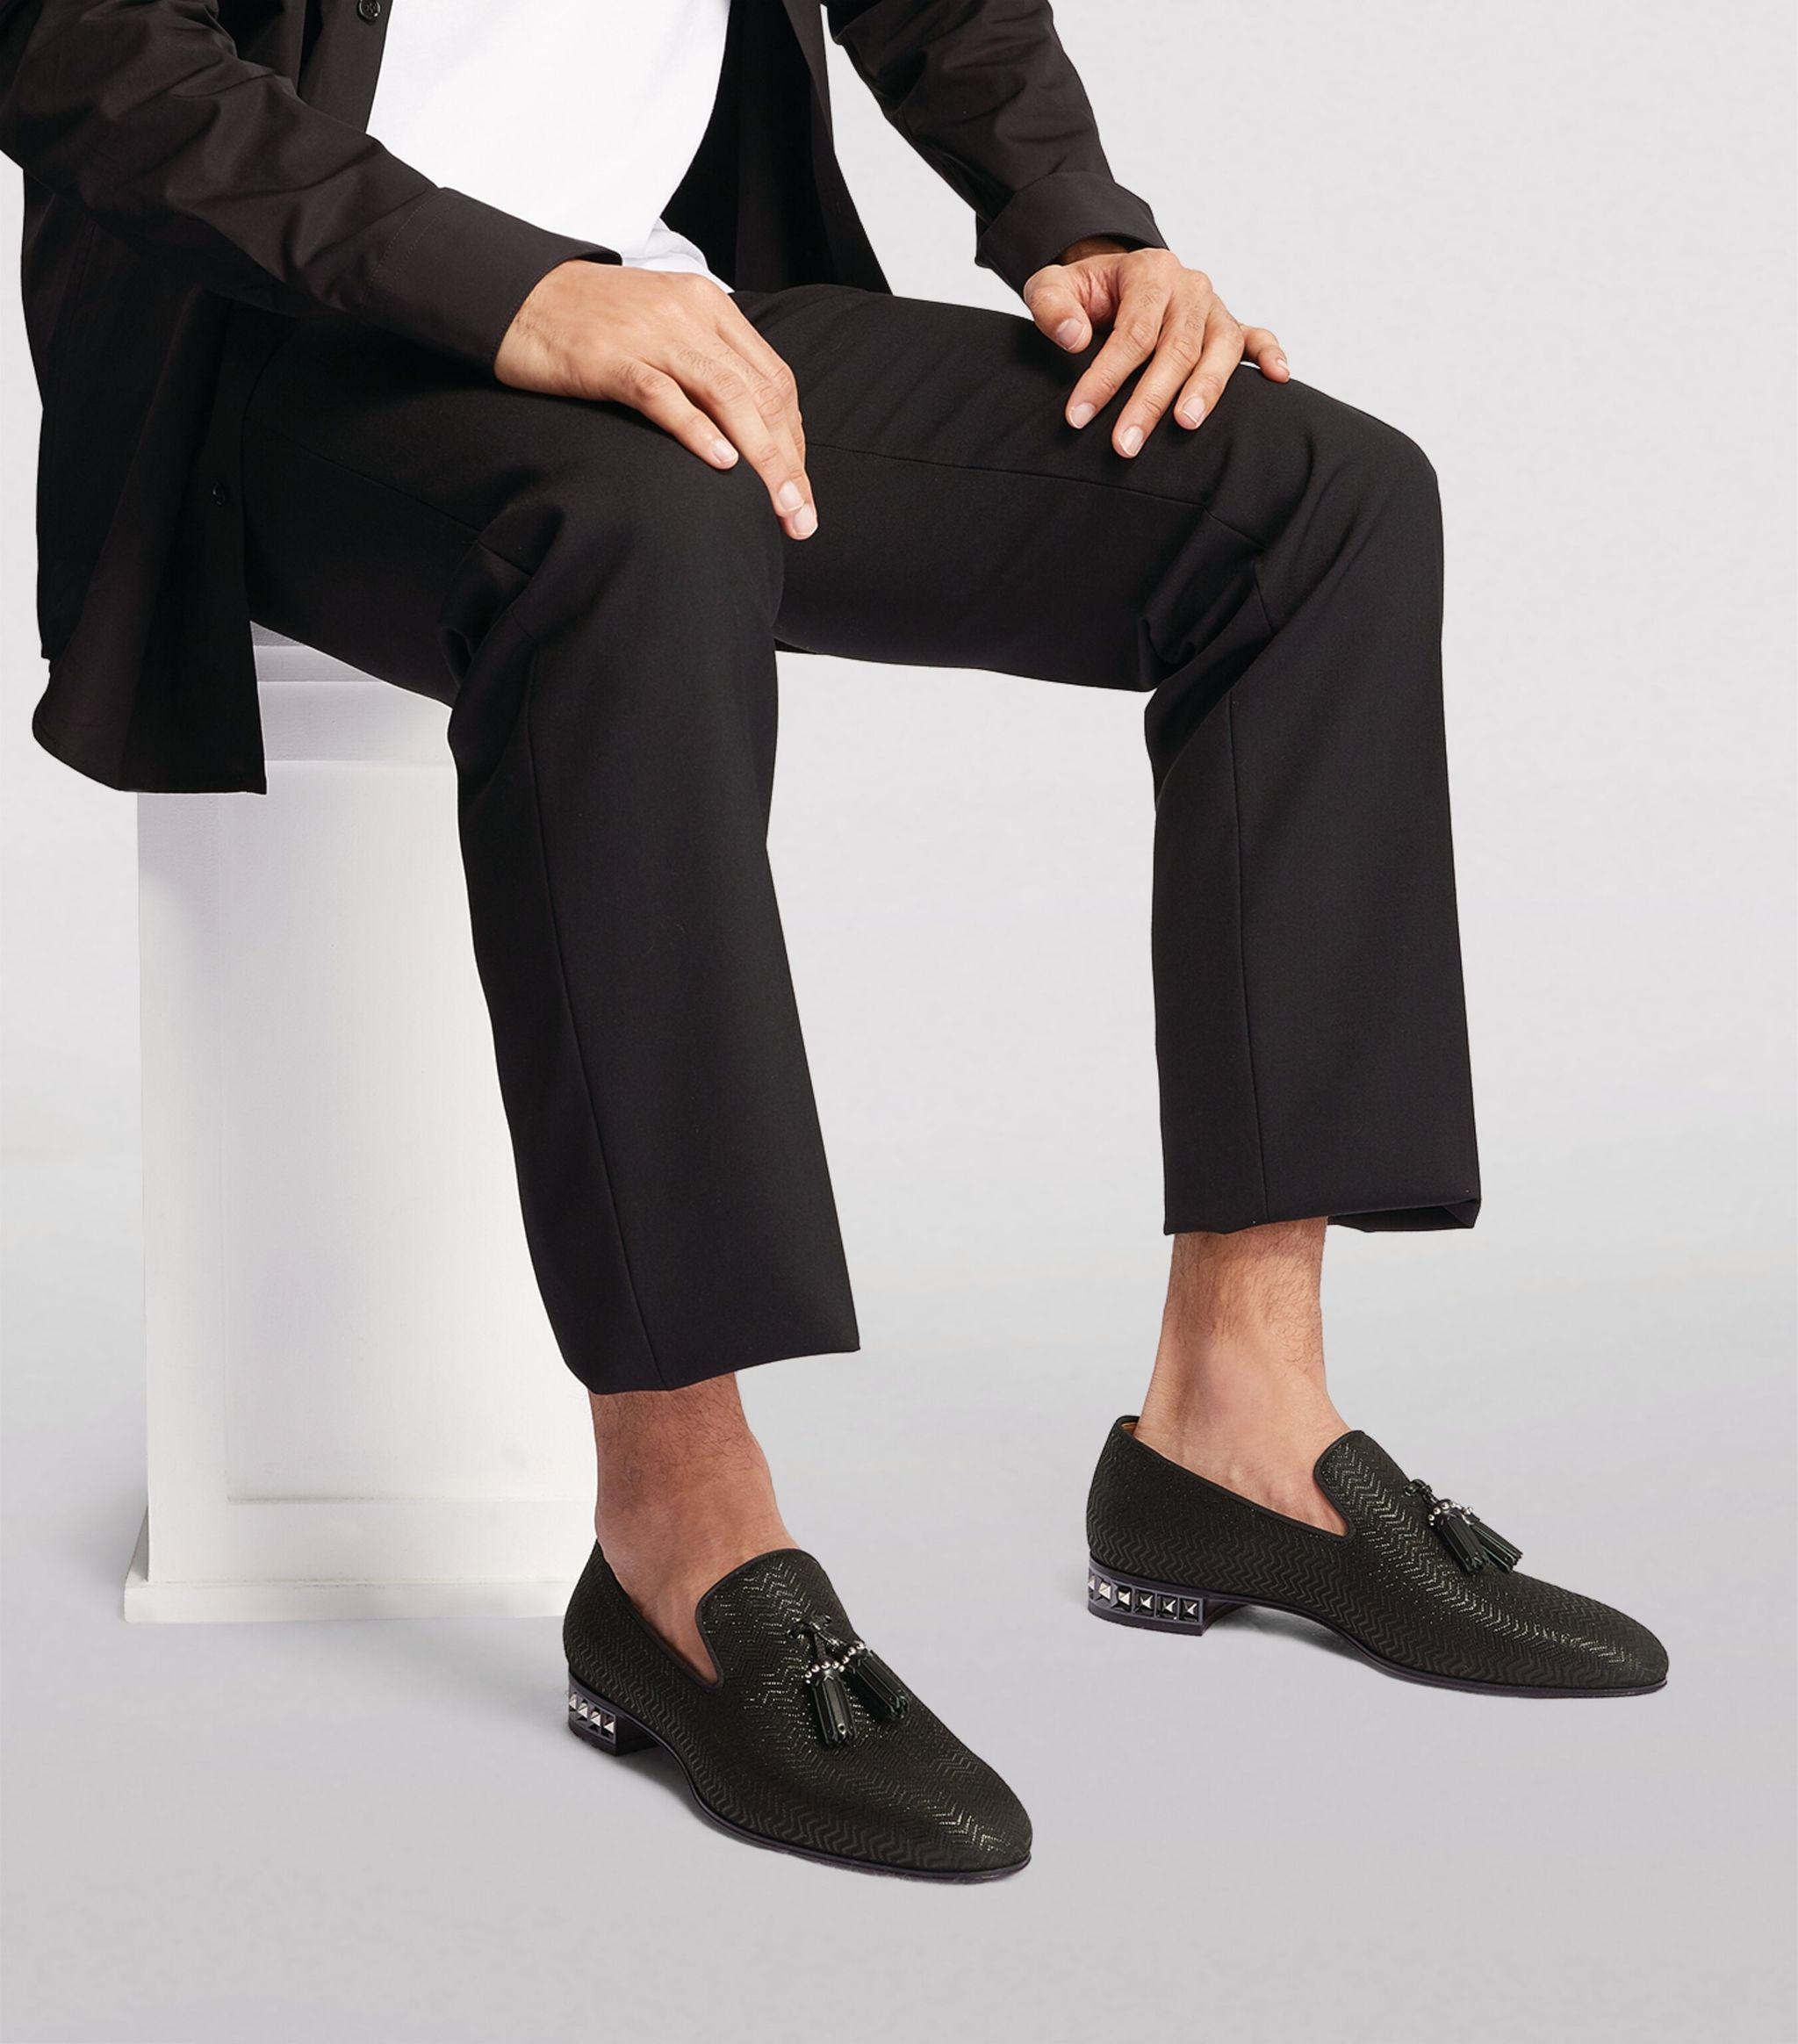 Christian Louboutin Loafers For Men Hotsell | website.jkuat.ac.ke